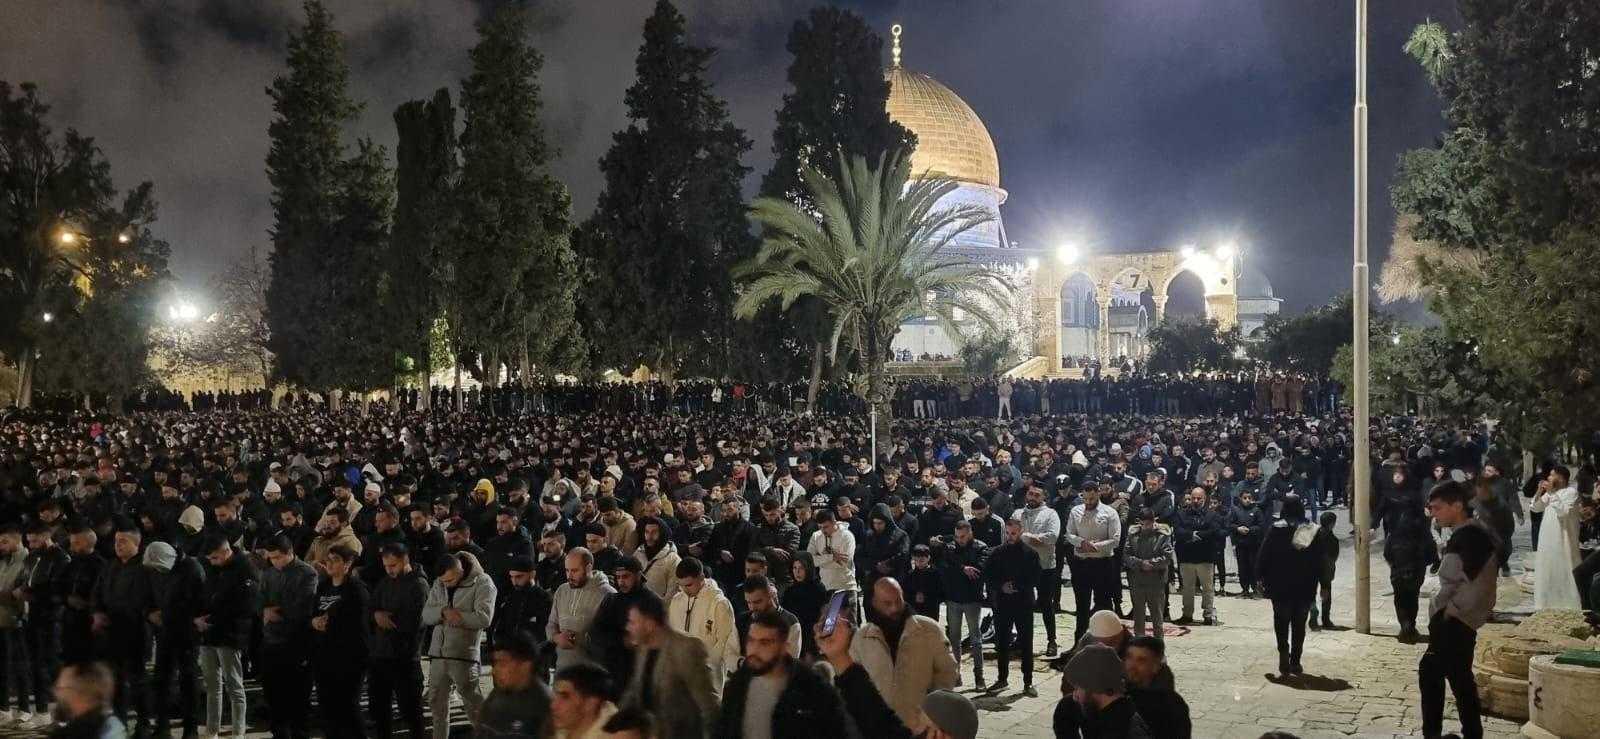 90 ألف مصل يؤدون صلاتي العشاء والتراويح في المسجد الأقصى المبارك بالقدس المحتلة